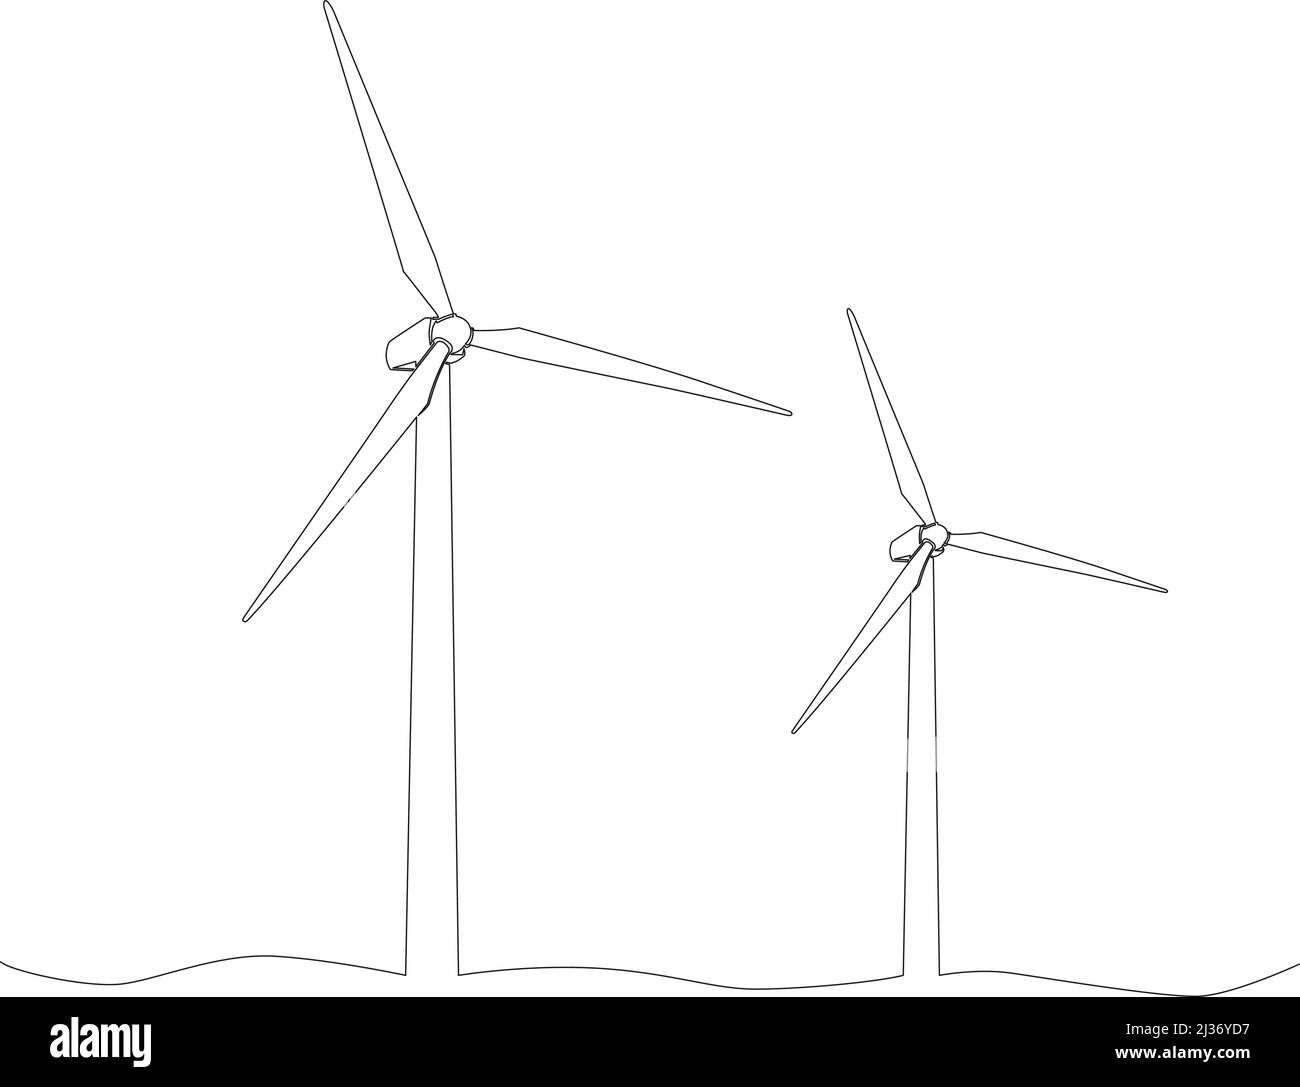 Einzellinienzeichnung von Windenergieanlagen, isoliert auf weißem Hintergrund, fortlaufende Linie, handgezeichnete Vektorgrafik Stock Vektor